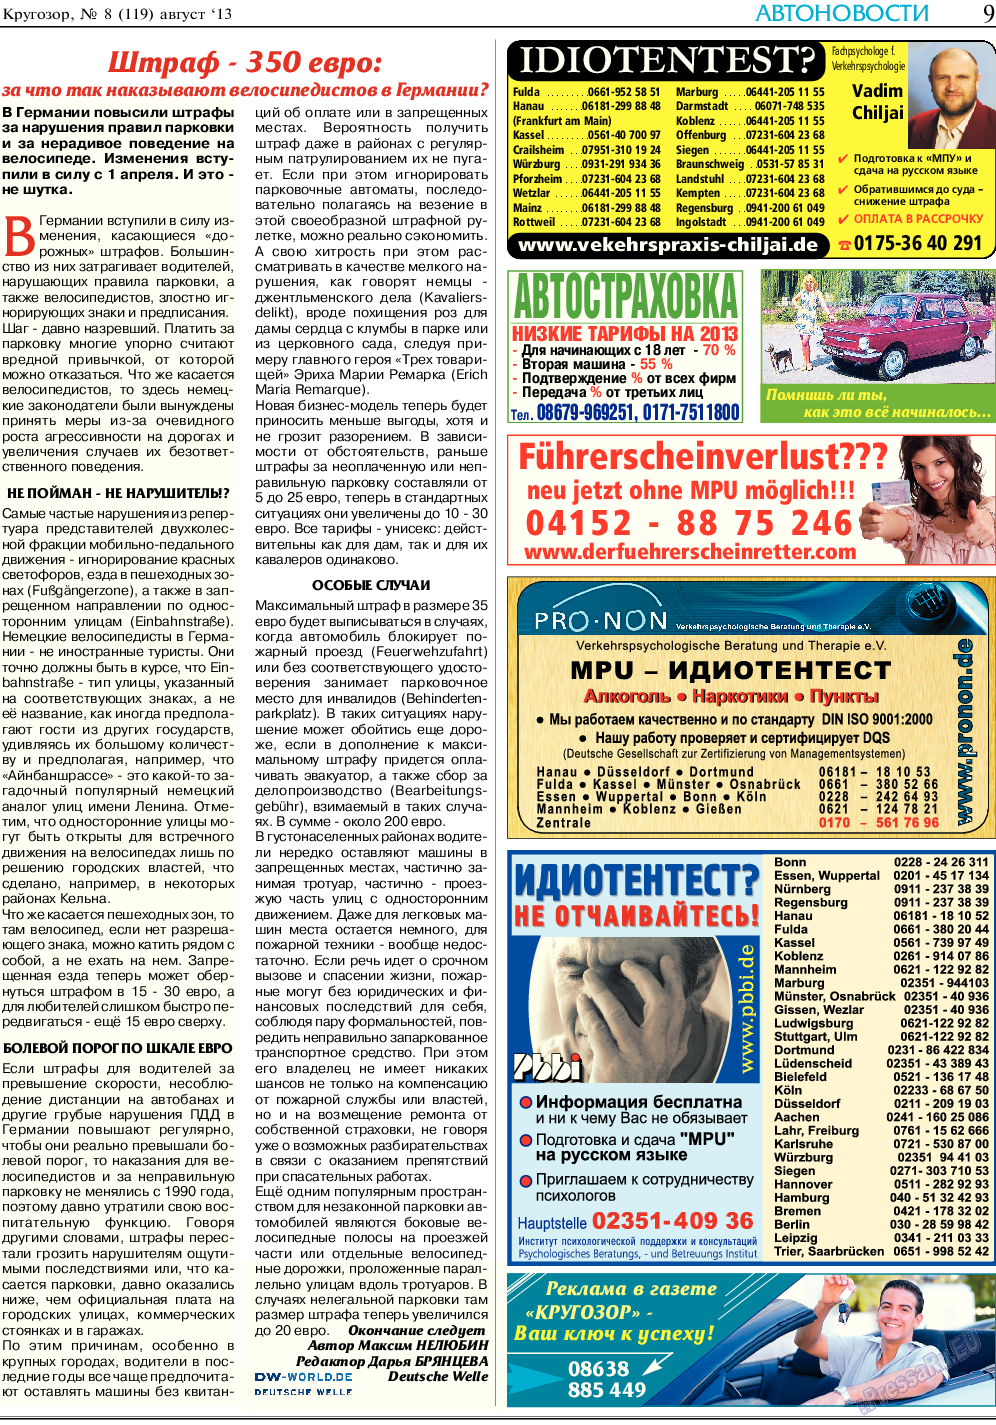 Кругозор, газета. 2013 №8 стр.9